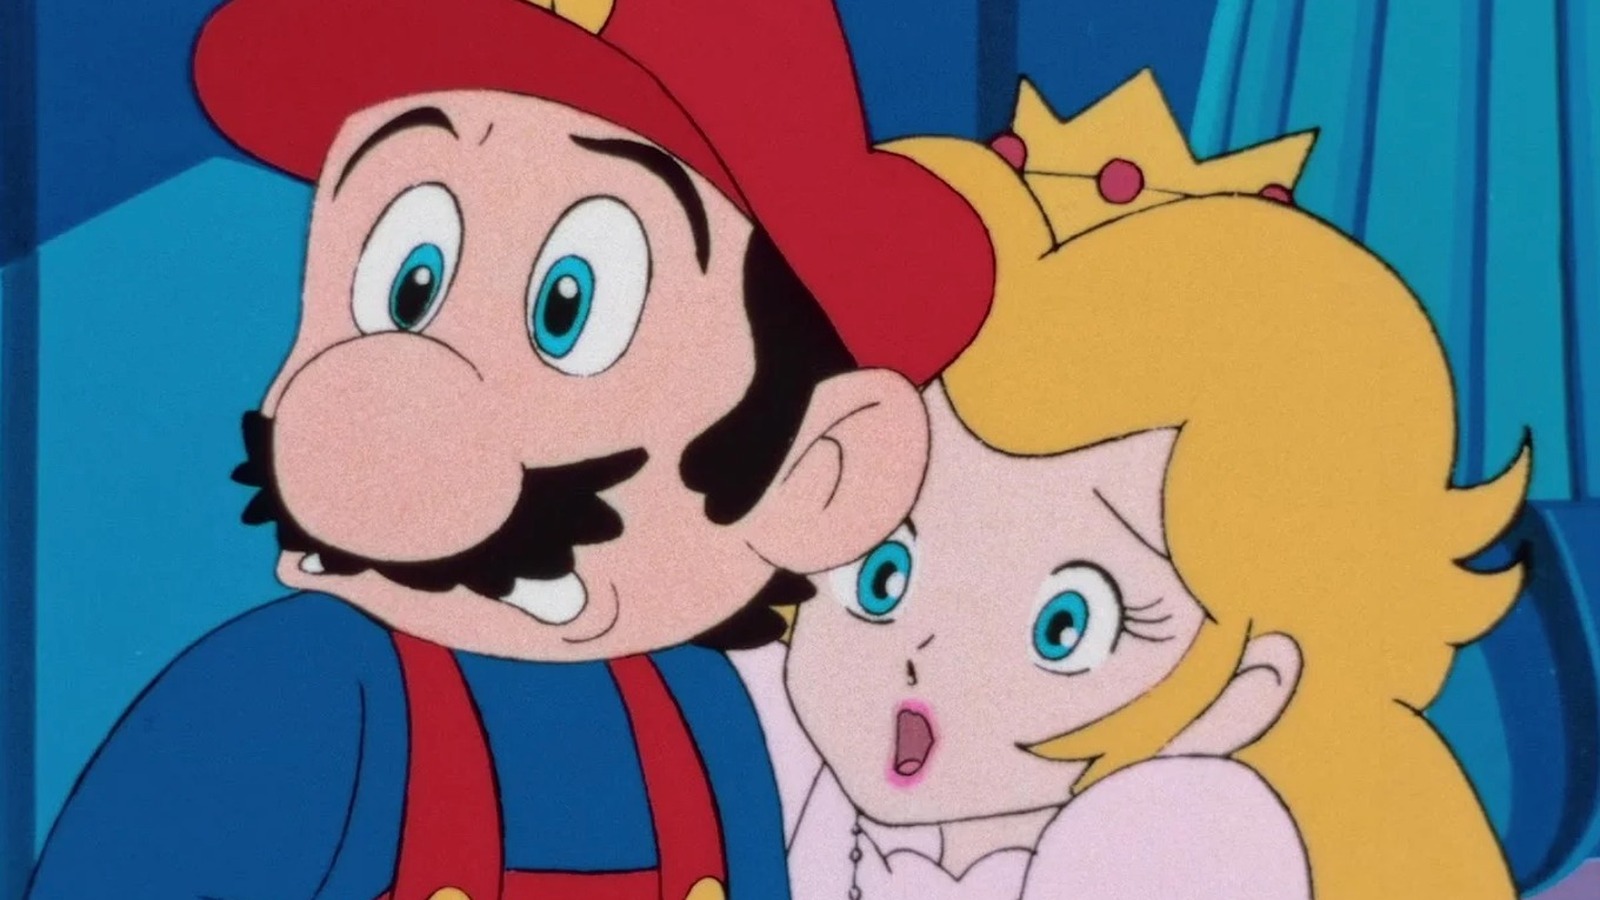 Super Mario Bros 1986 anime film was restored in 4K - Niche Gamer